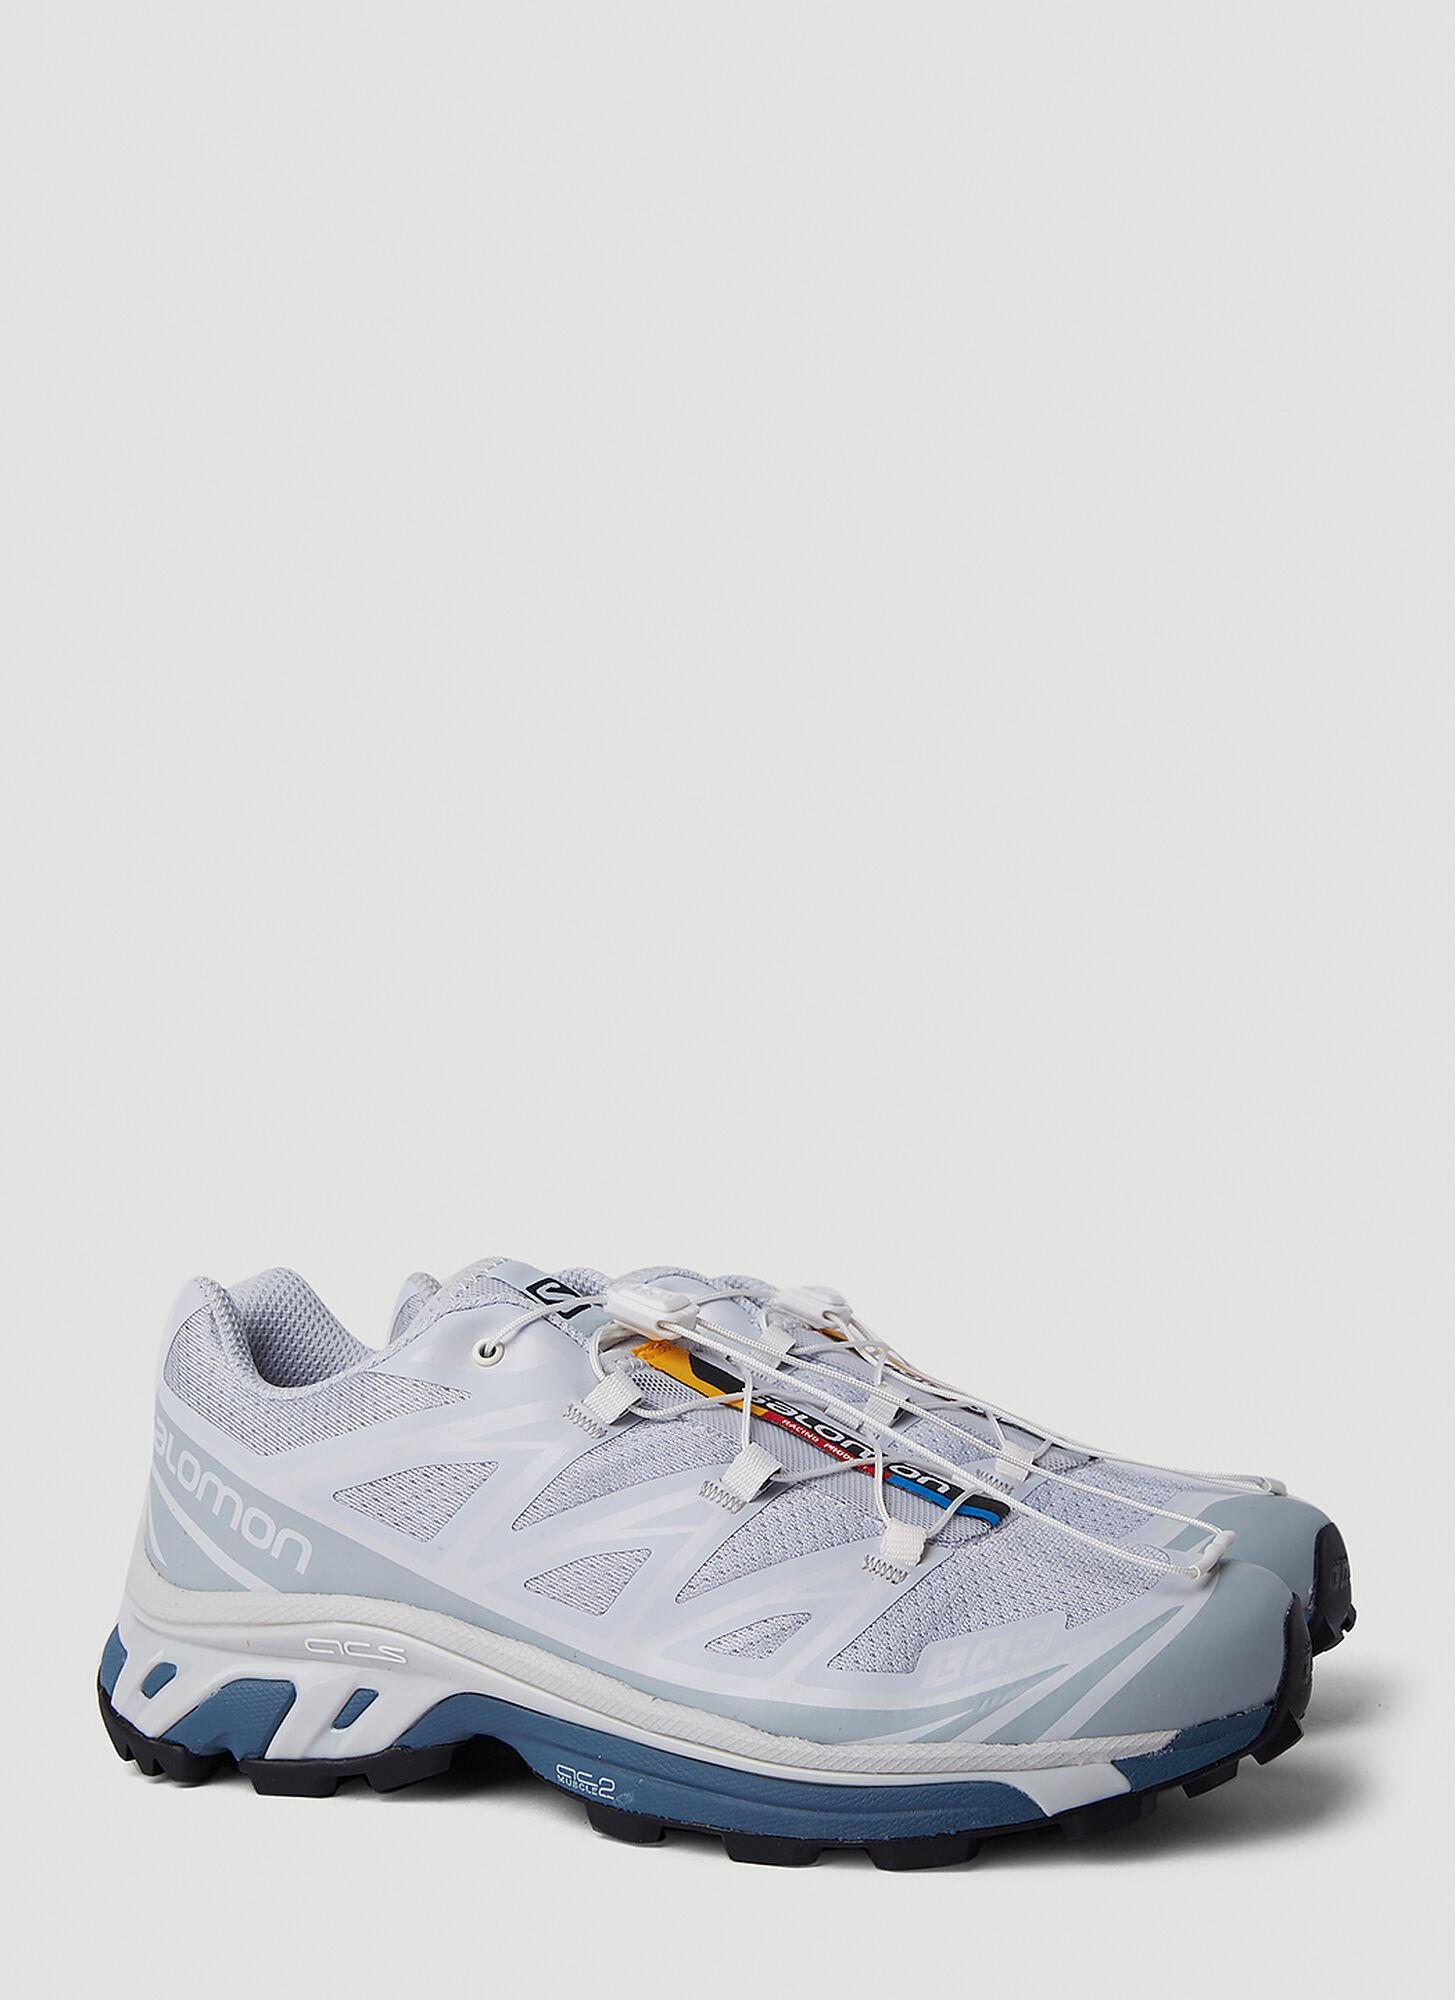 Salomon Xt-6 Mindful Sneakers in White | Lyst